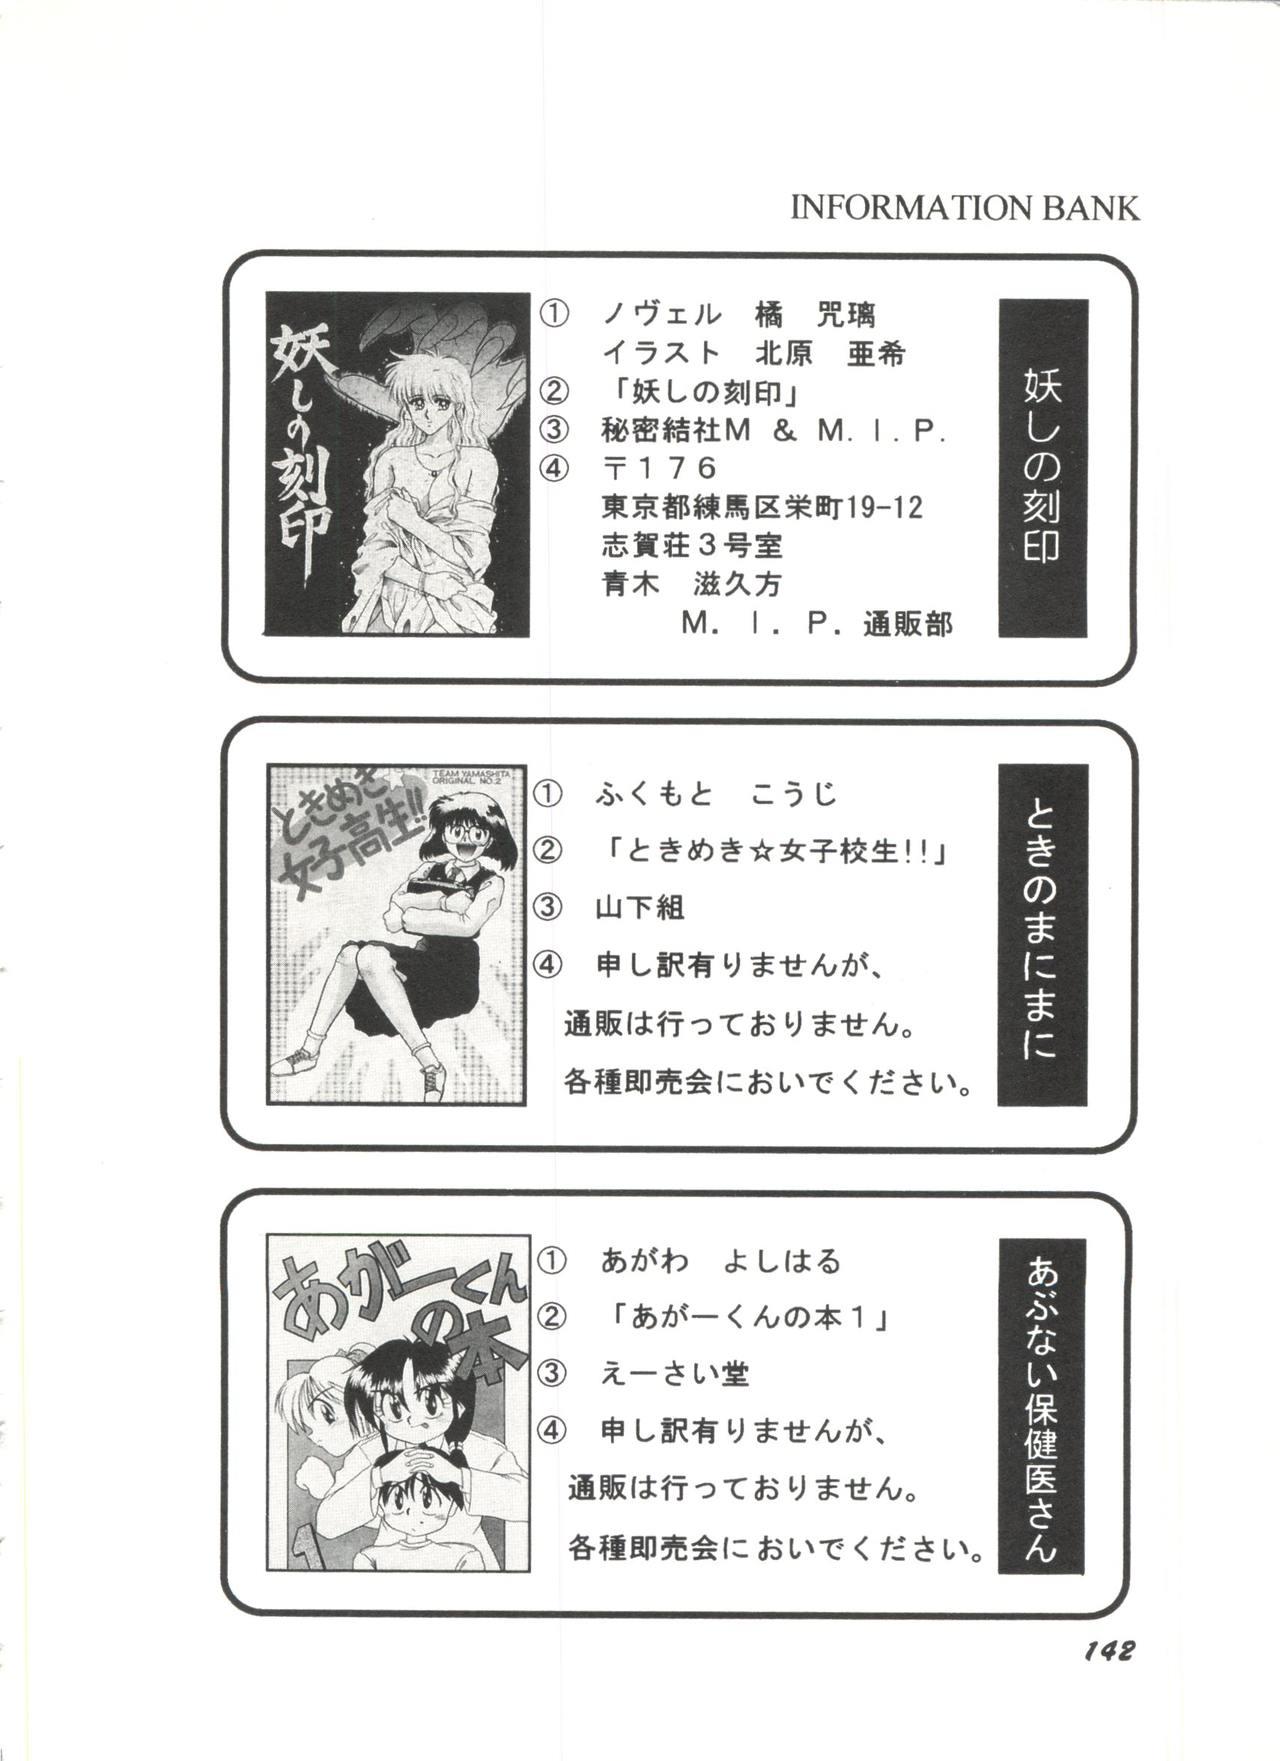 Bishoujo Doujinshi Anthology 1 143